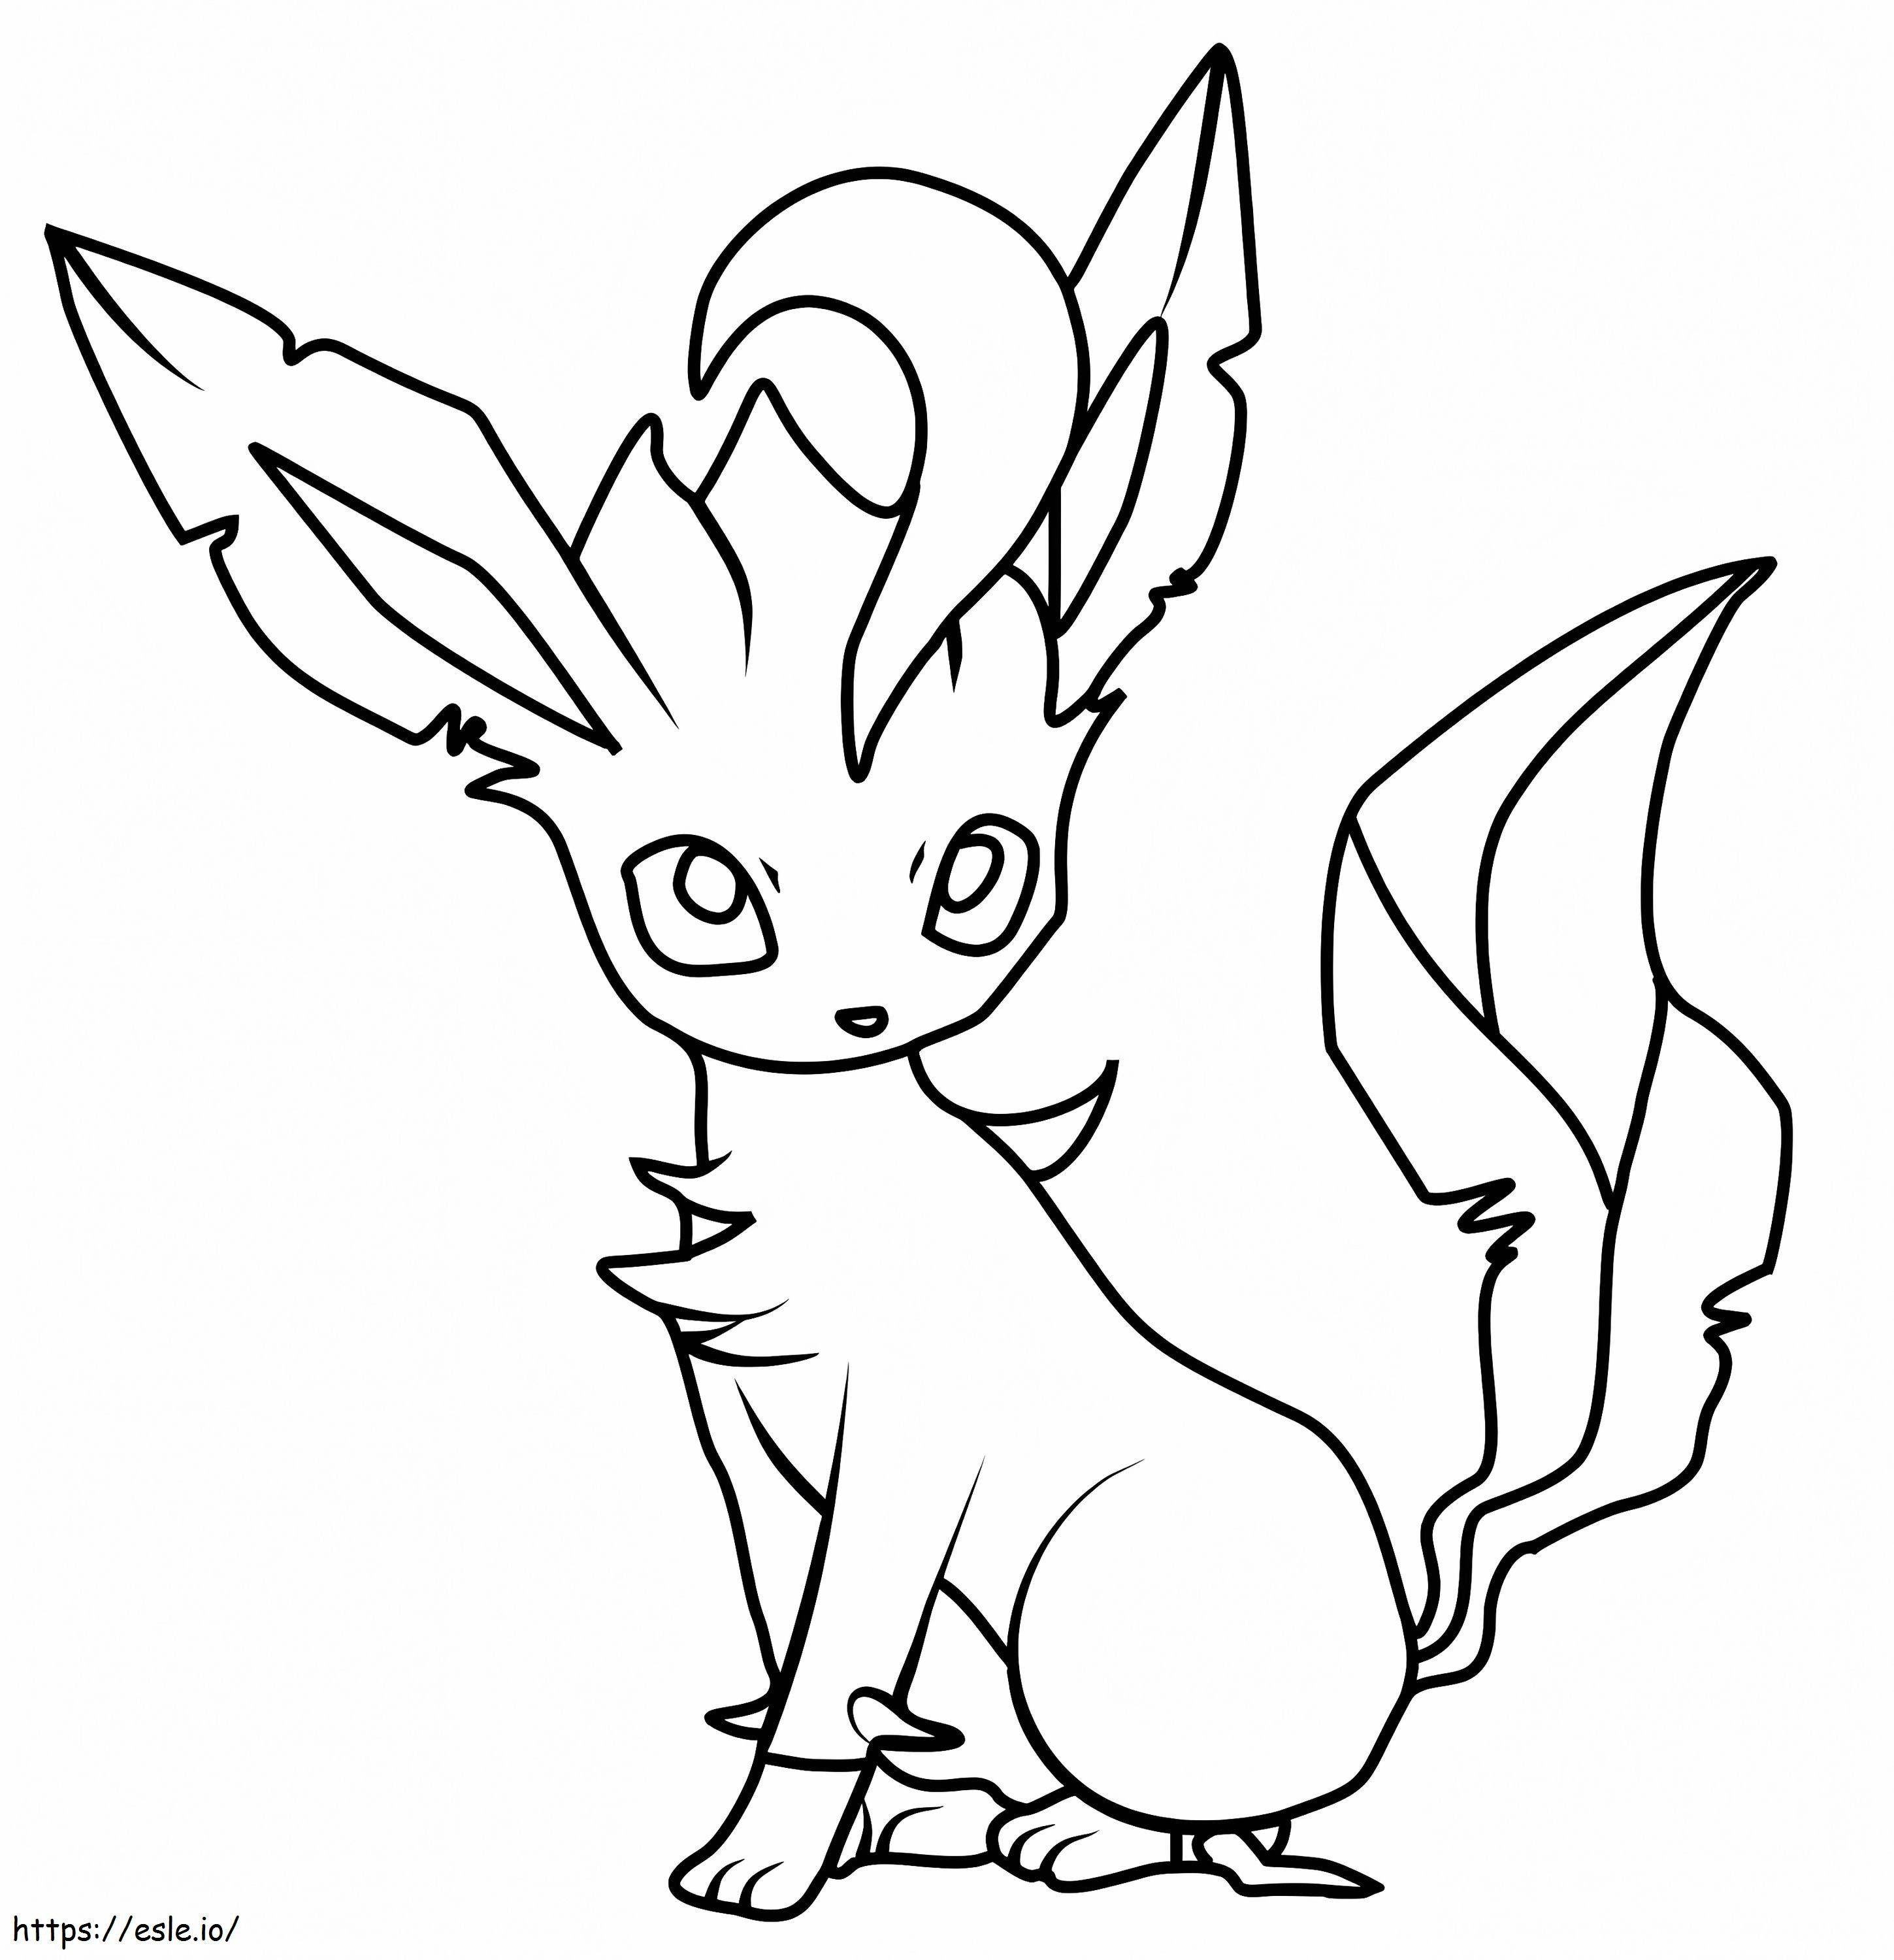 Schönes Leafeon-Pokémon ausmalbilder